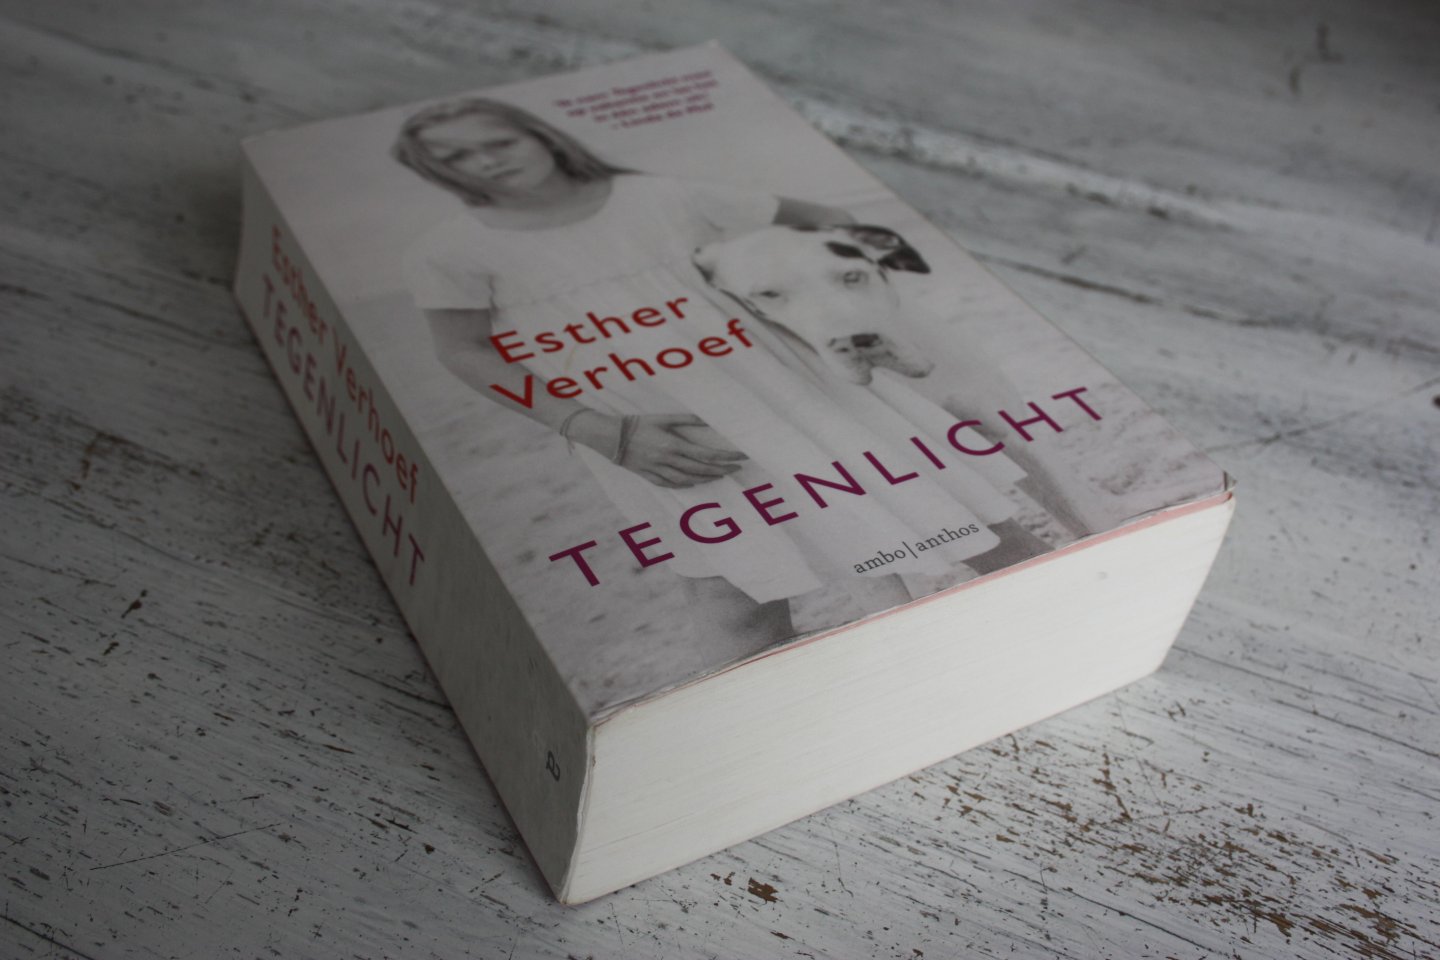 Verhoef, - Esther Verhoef / TEGENLICHT